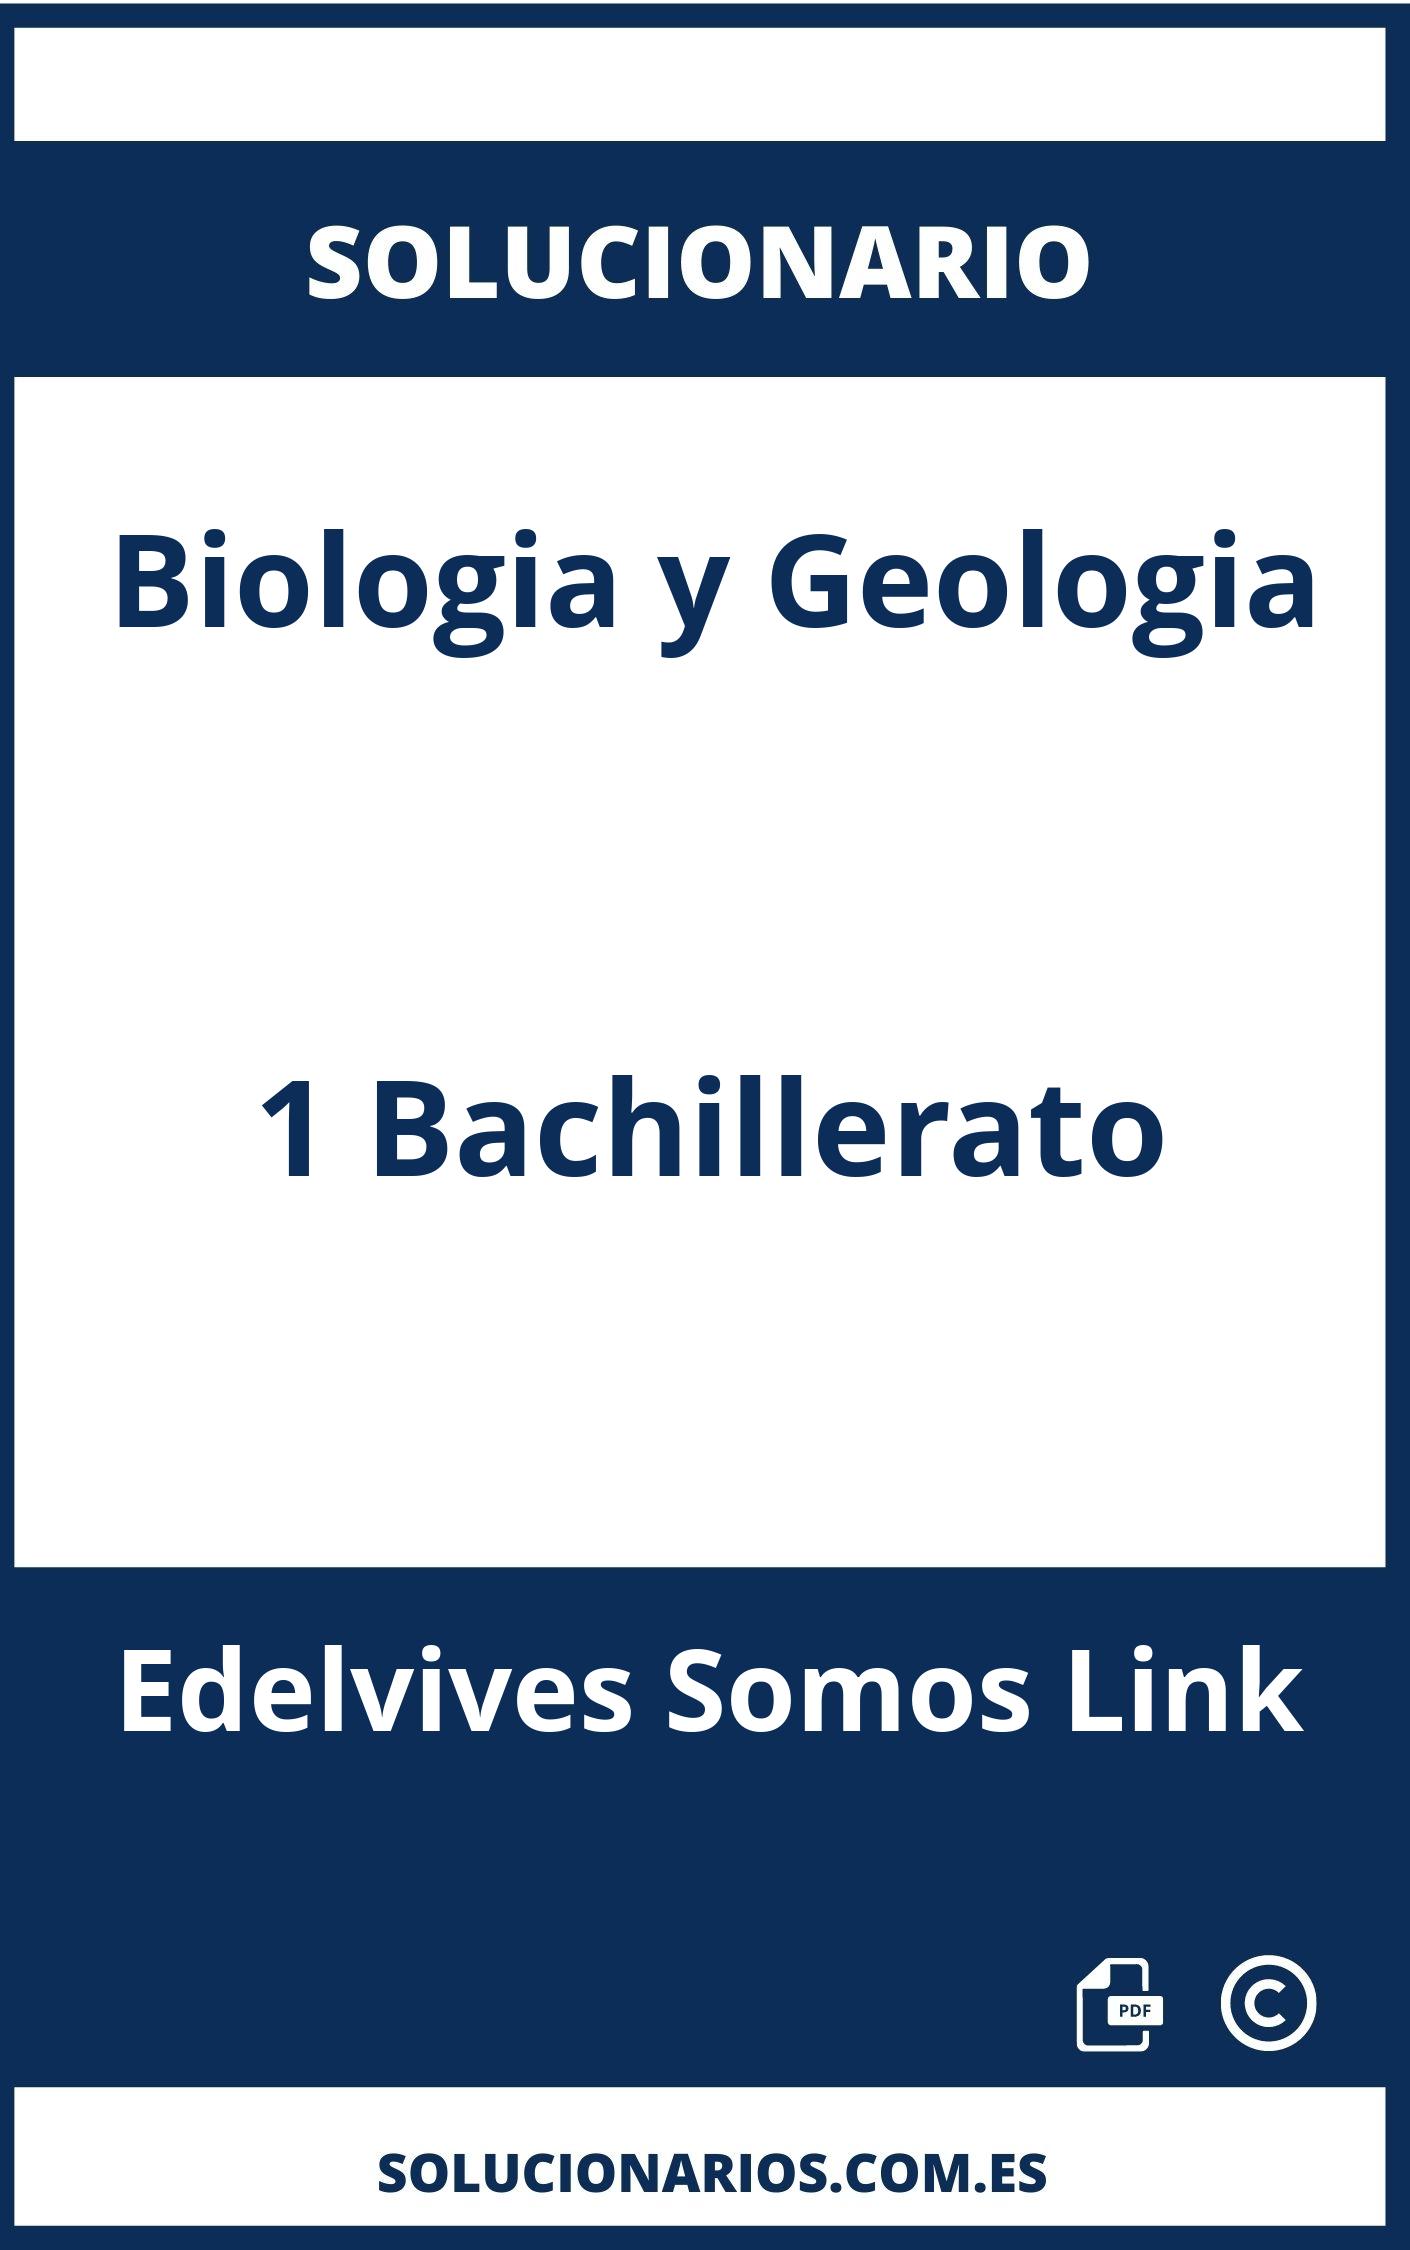 Solucionario Biologia y Geologia 1 Bachillerato Edelvives Somos Link